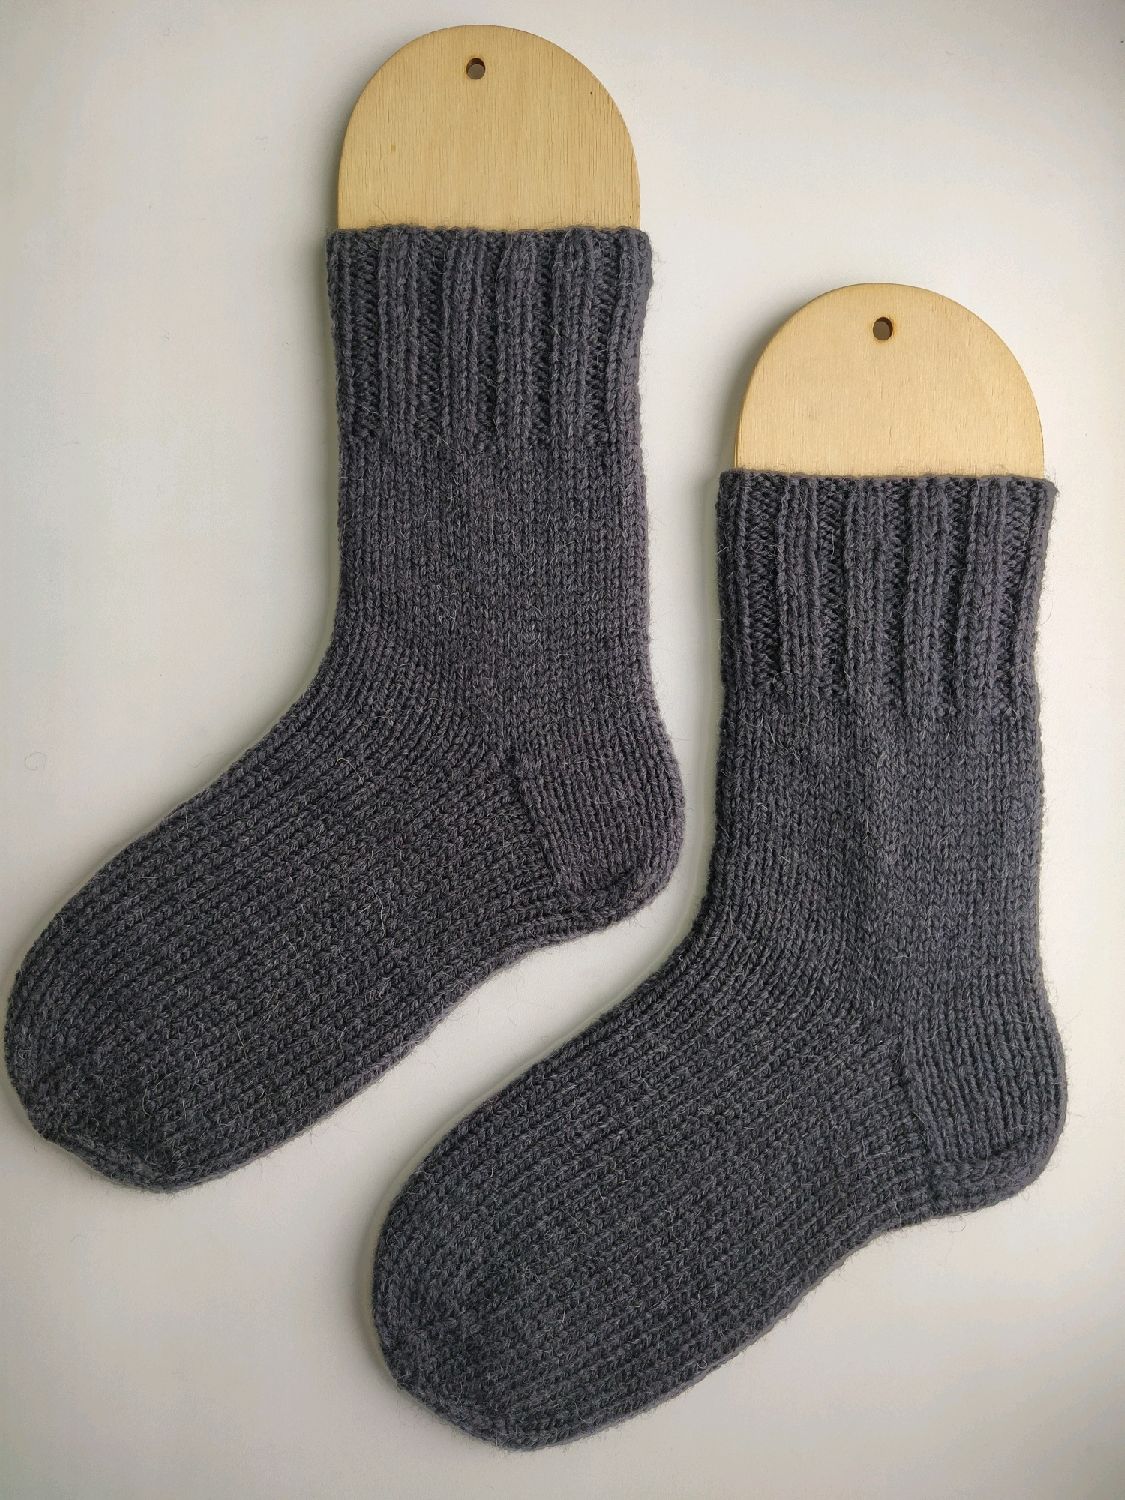 бабушкины вязаные носки